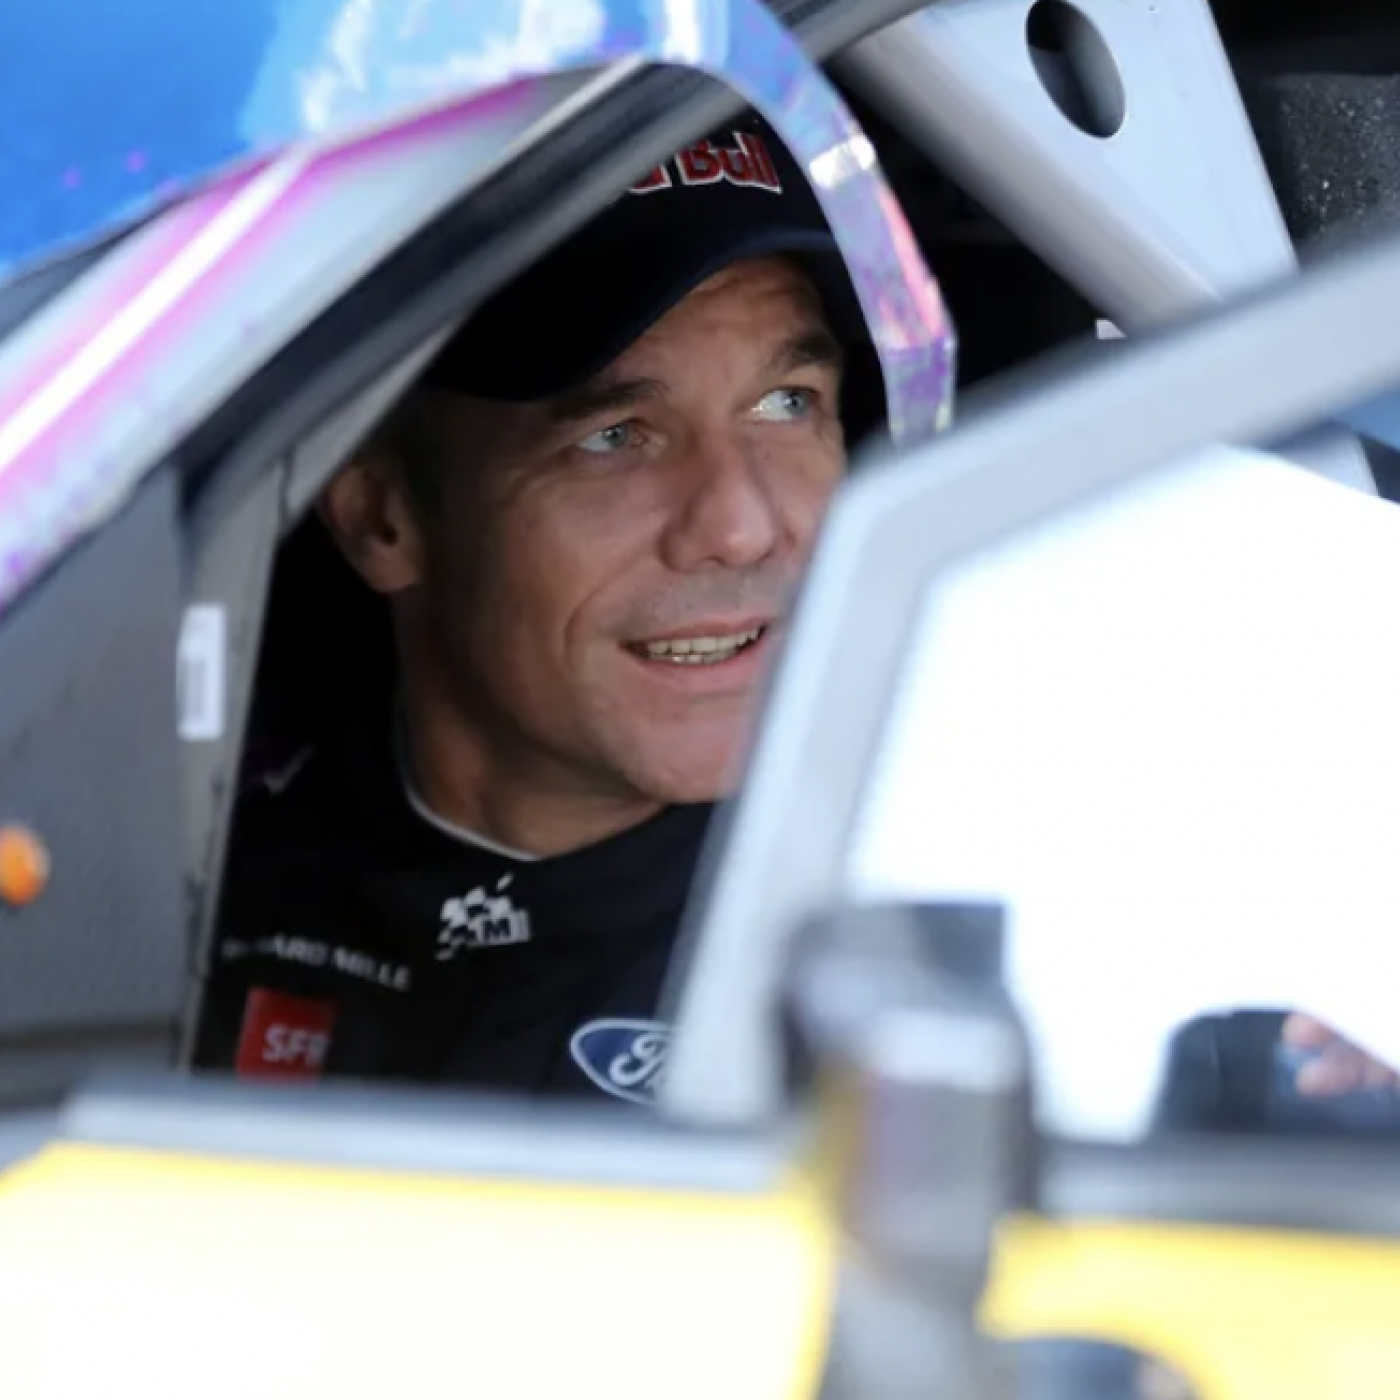 Sébastien Loeb remporte le Rallye Monte-Carlo et bat un nouveau record